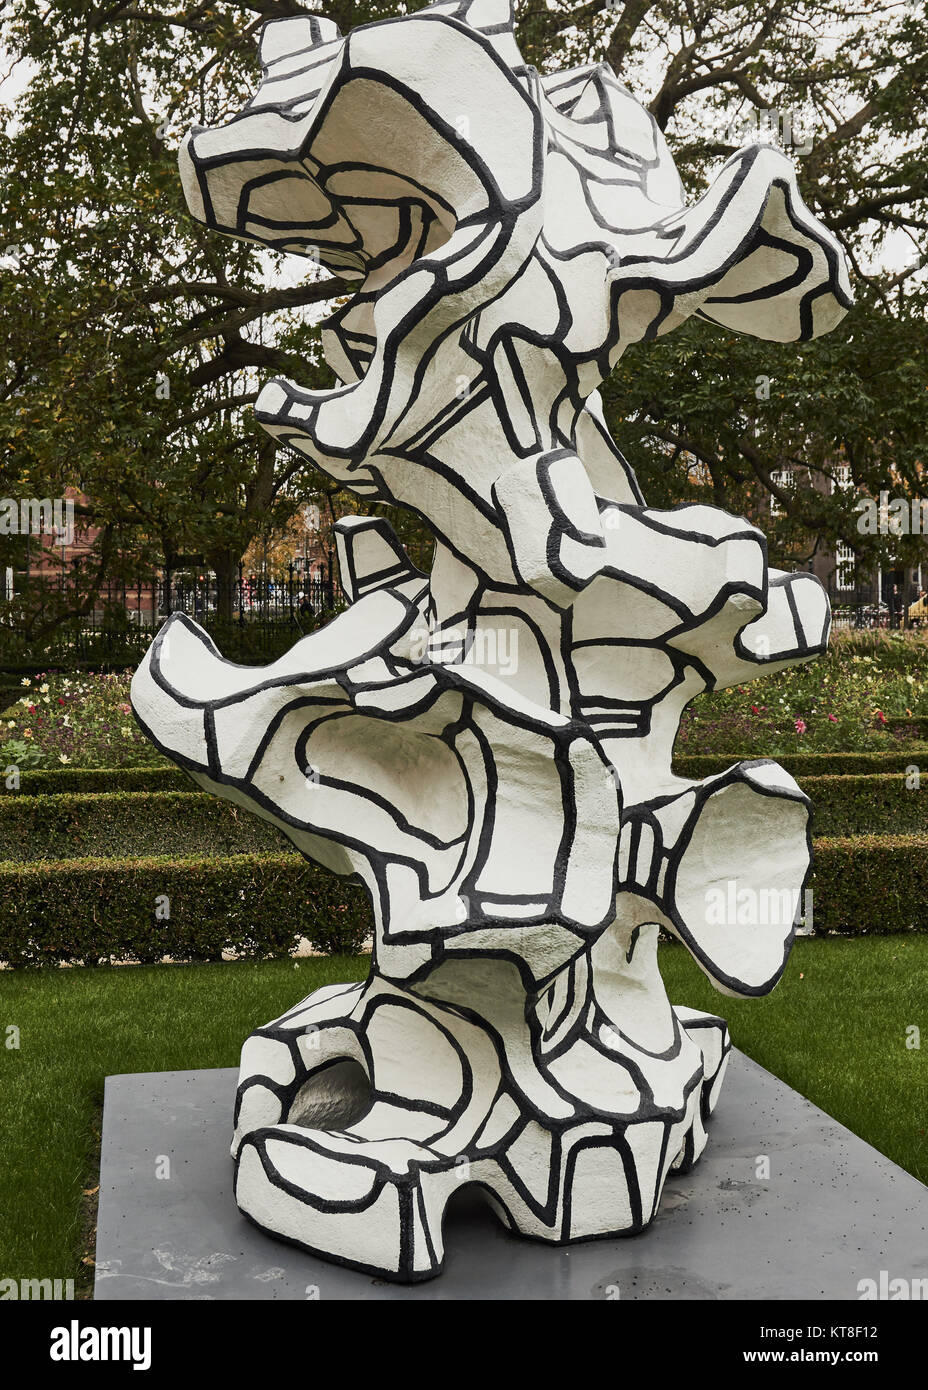 Skulptur von dem französischen Künstler Jean Dubuffet, Rijksmuseum Gärten, Museumplein (Museumsplatz), Amsterdam, Holland Stockfoto